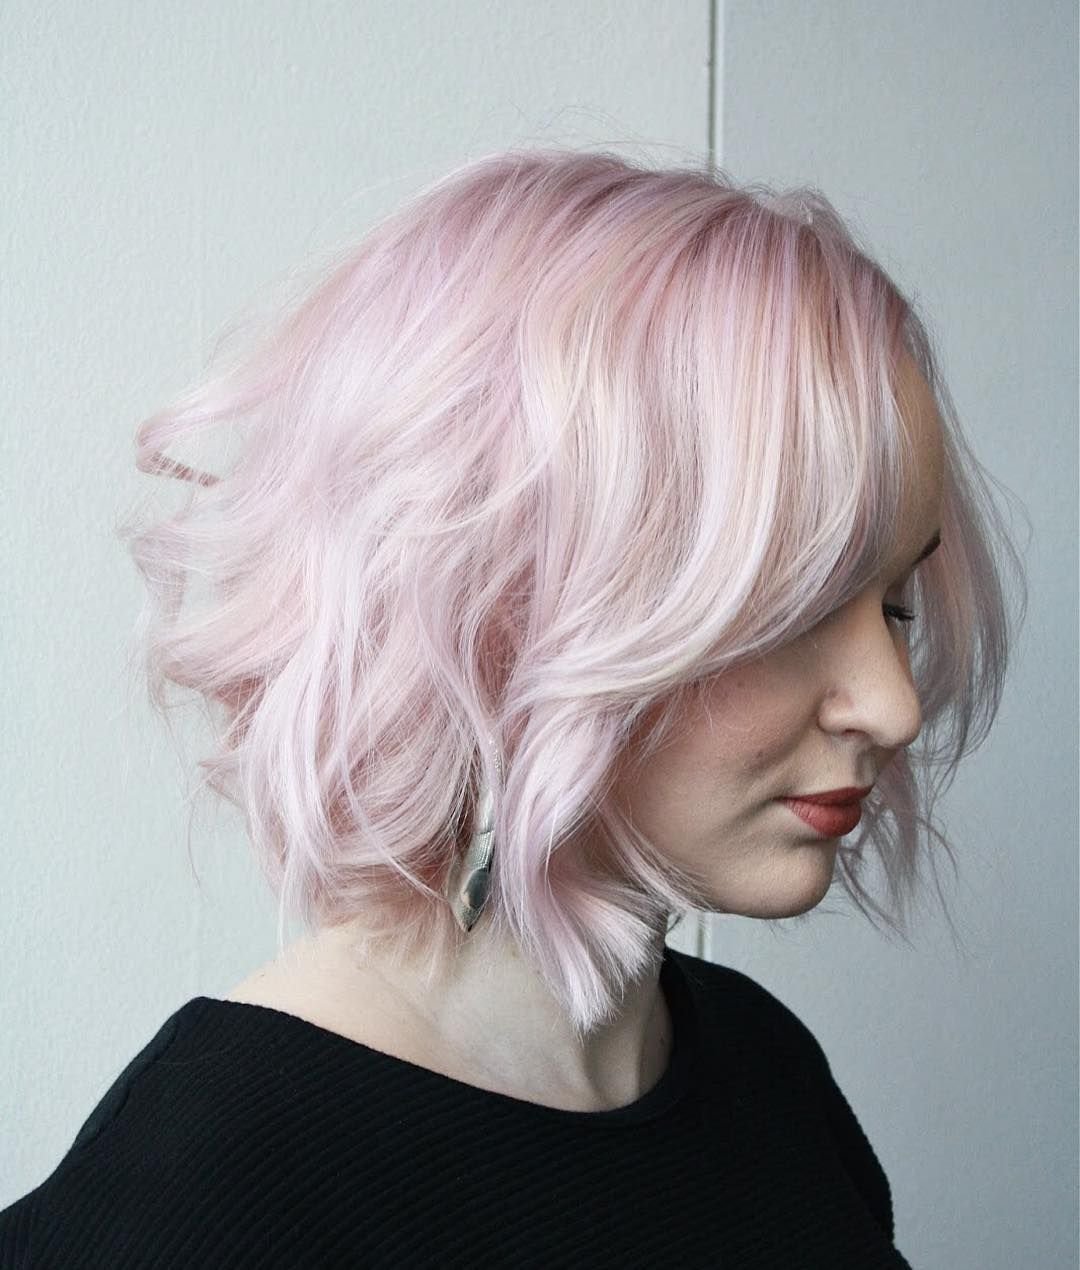 Жемчужно розовые волосы. Розовые волосы каре. Светло розовые волосы каре. Пепельный цвет волос с розовым оттенком. Пастельно-розовый цвет волос.